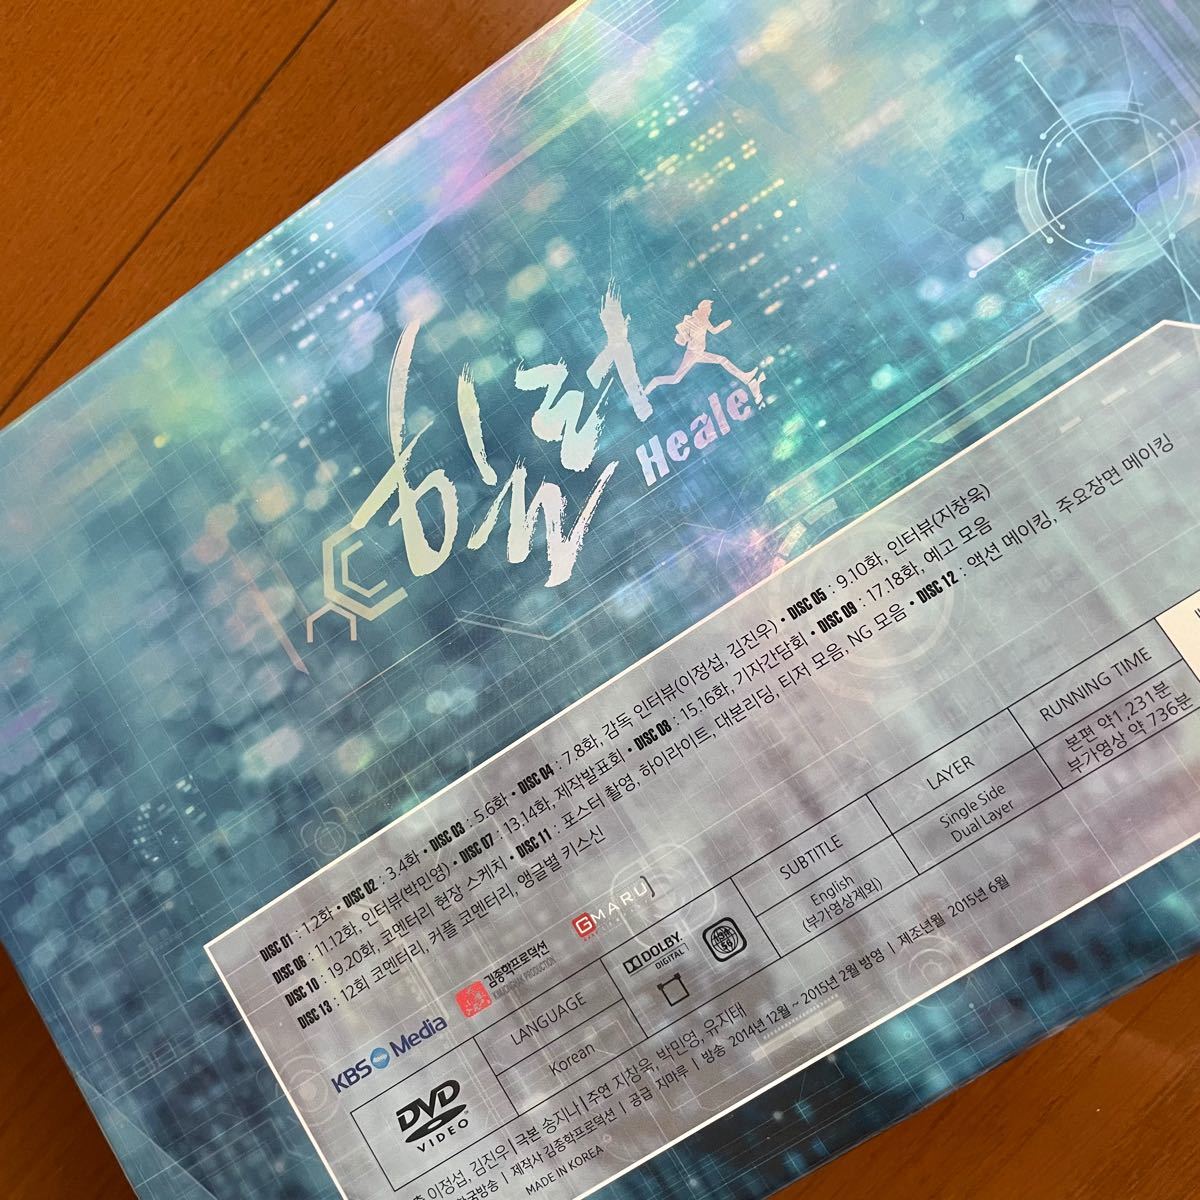 ヒーラー 監督版DVD - テレビドラマ